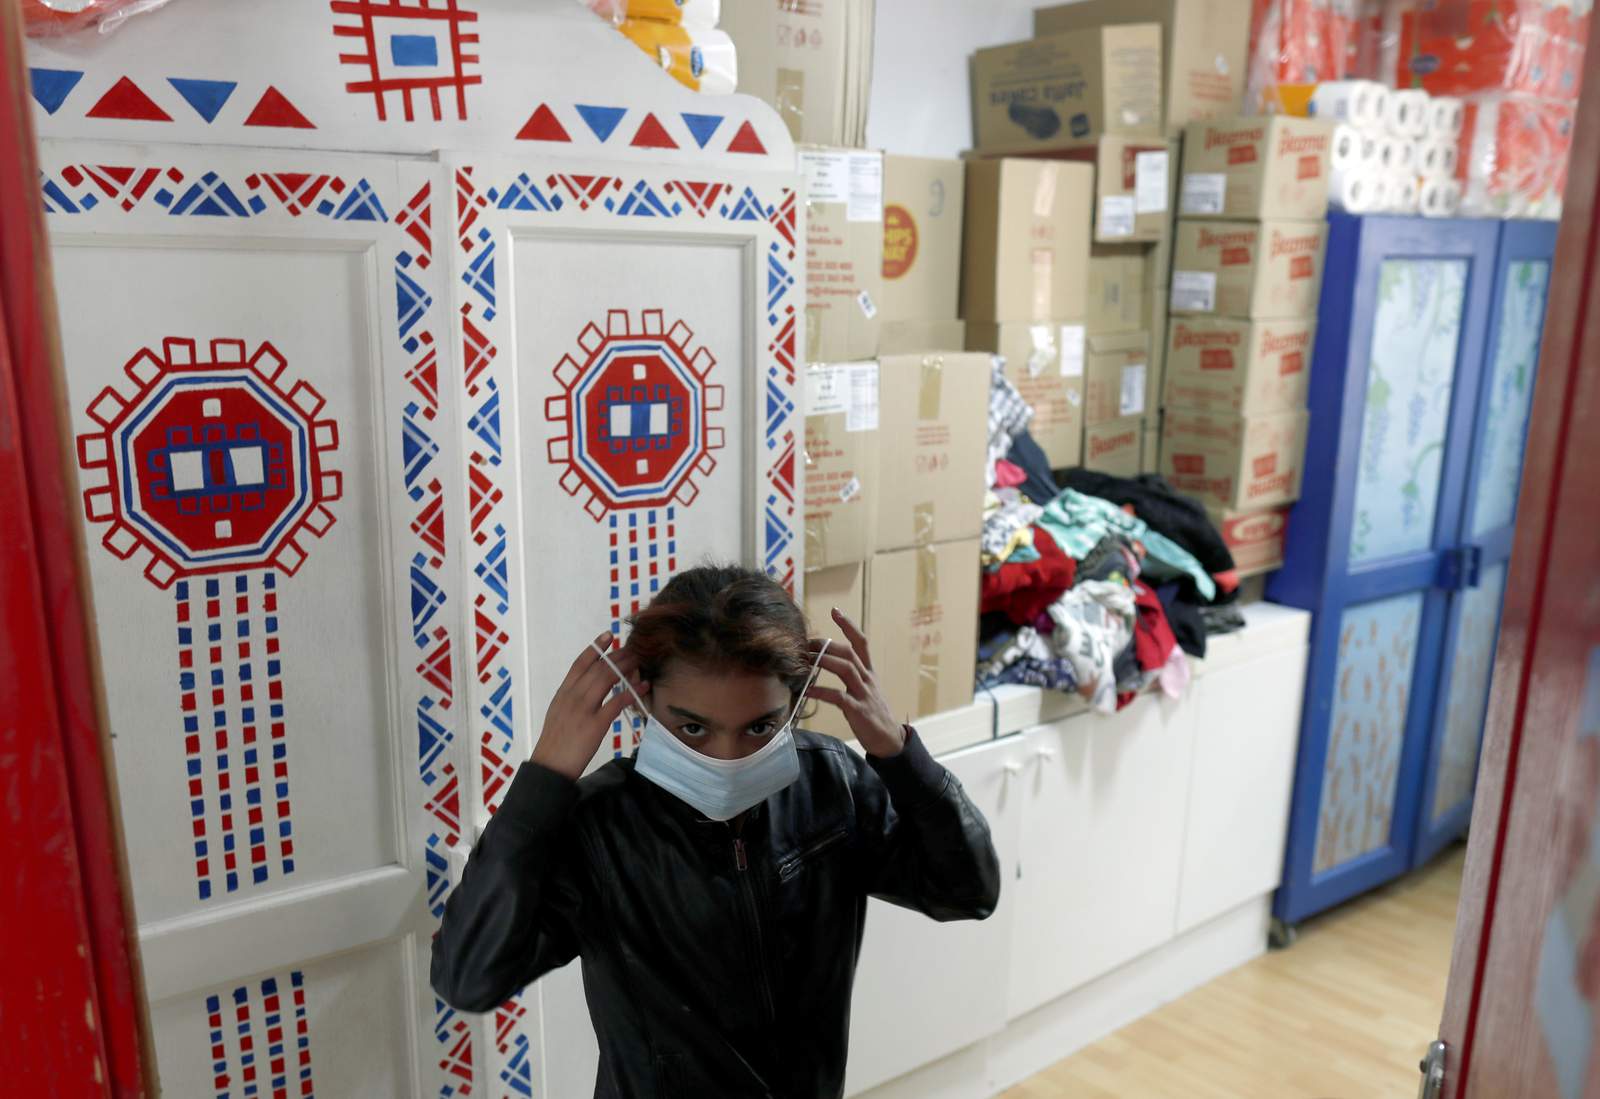 Amid pandemic, Belgrade street kids find comfort at refuge